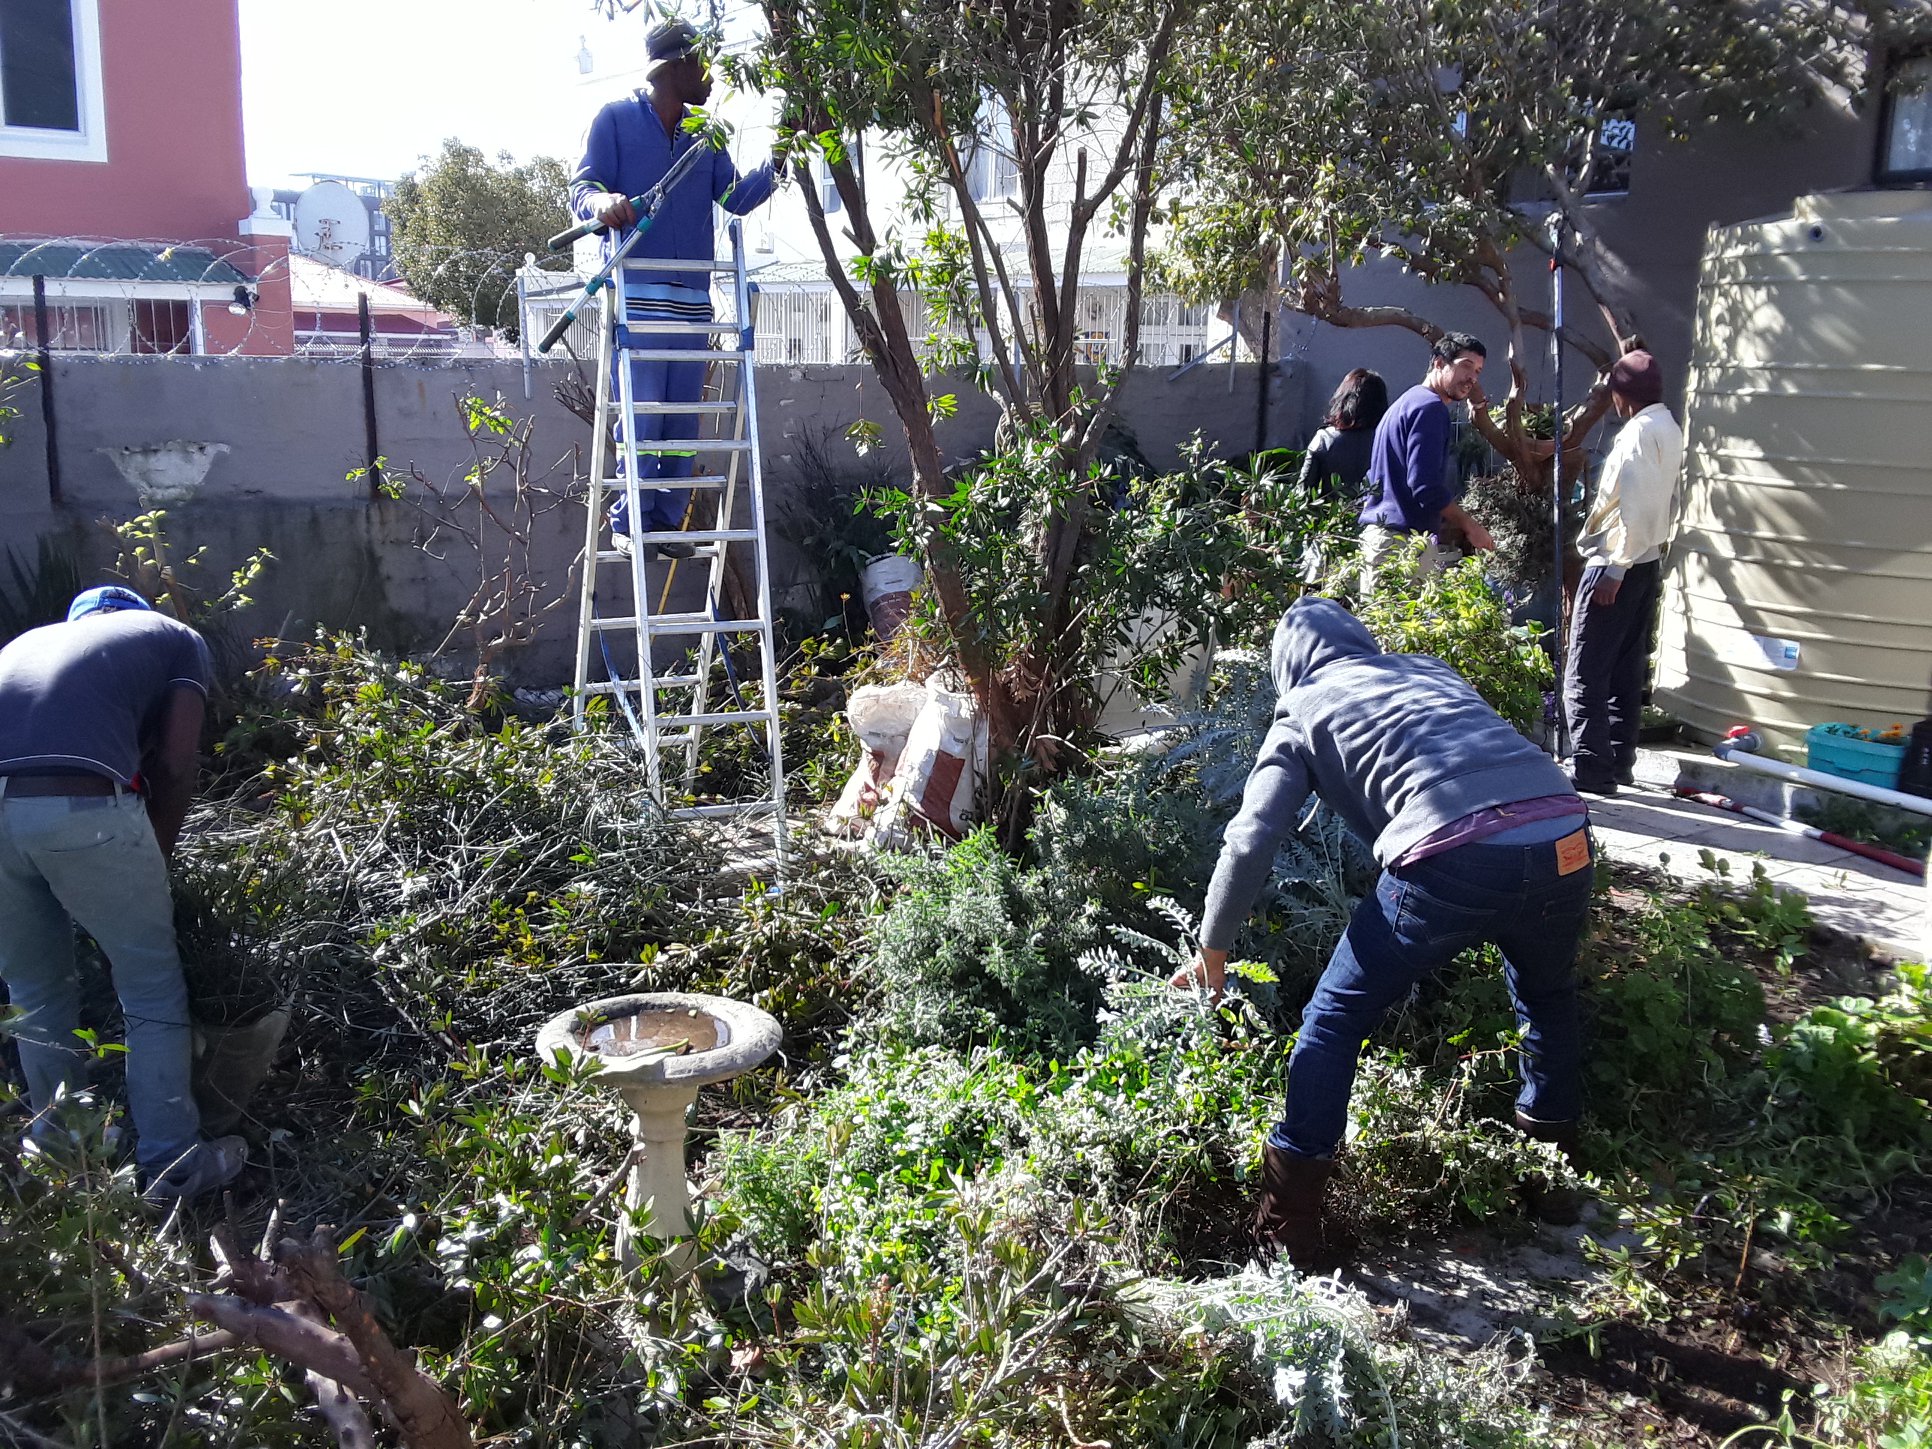 Preparing the garden for Mandela Day